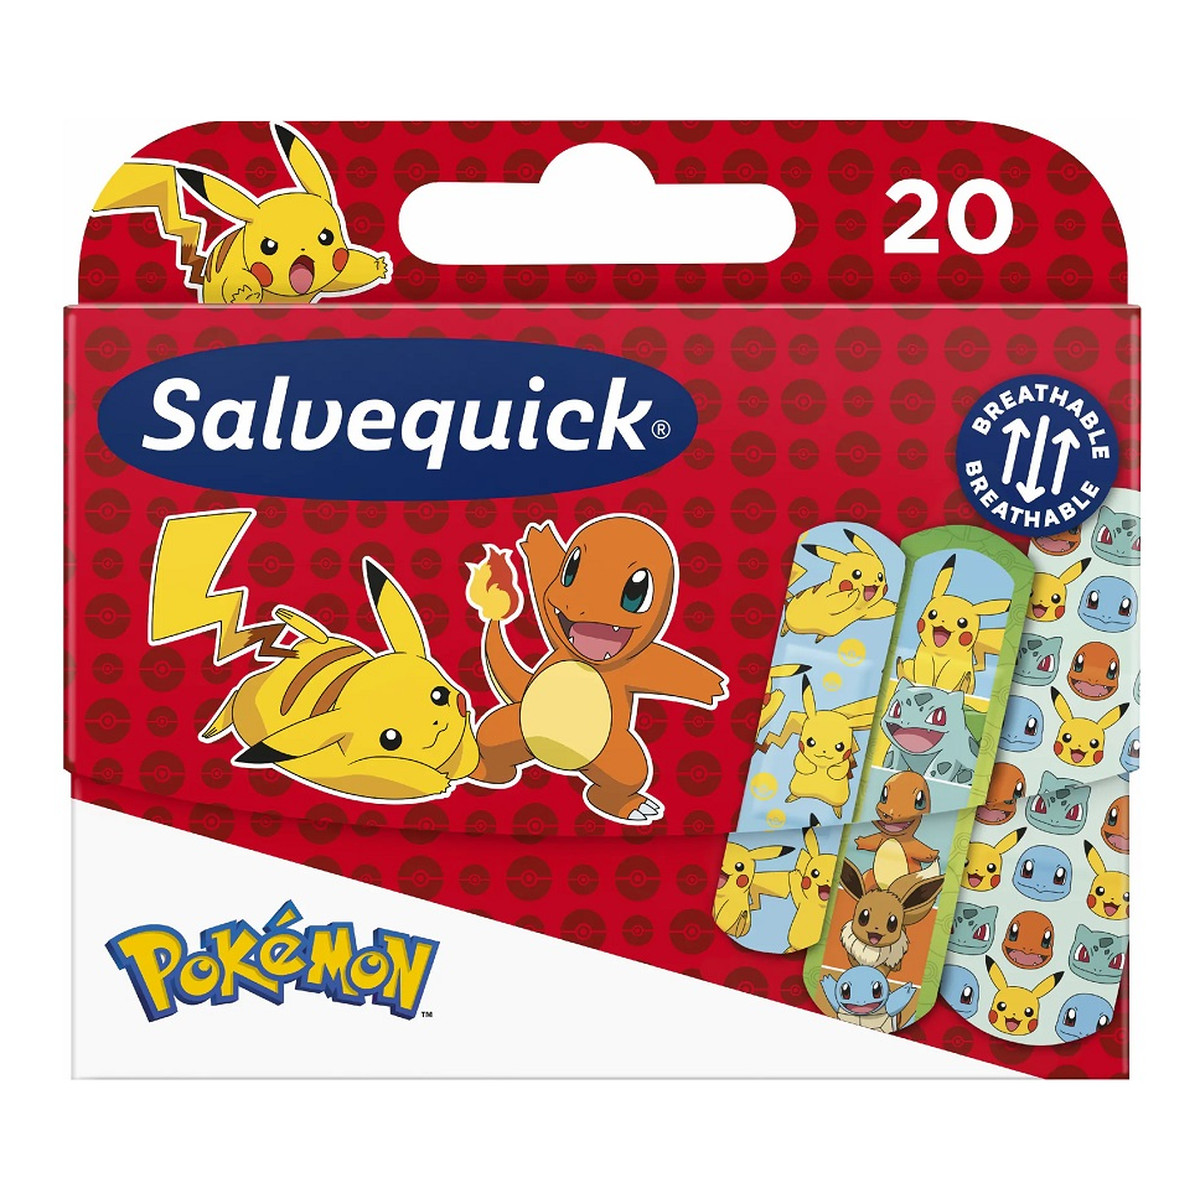 Salvequick Pokemon plastry dla dzieci 20szt.